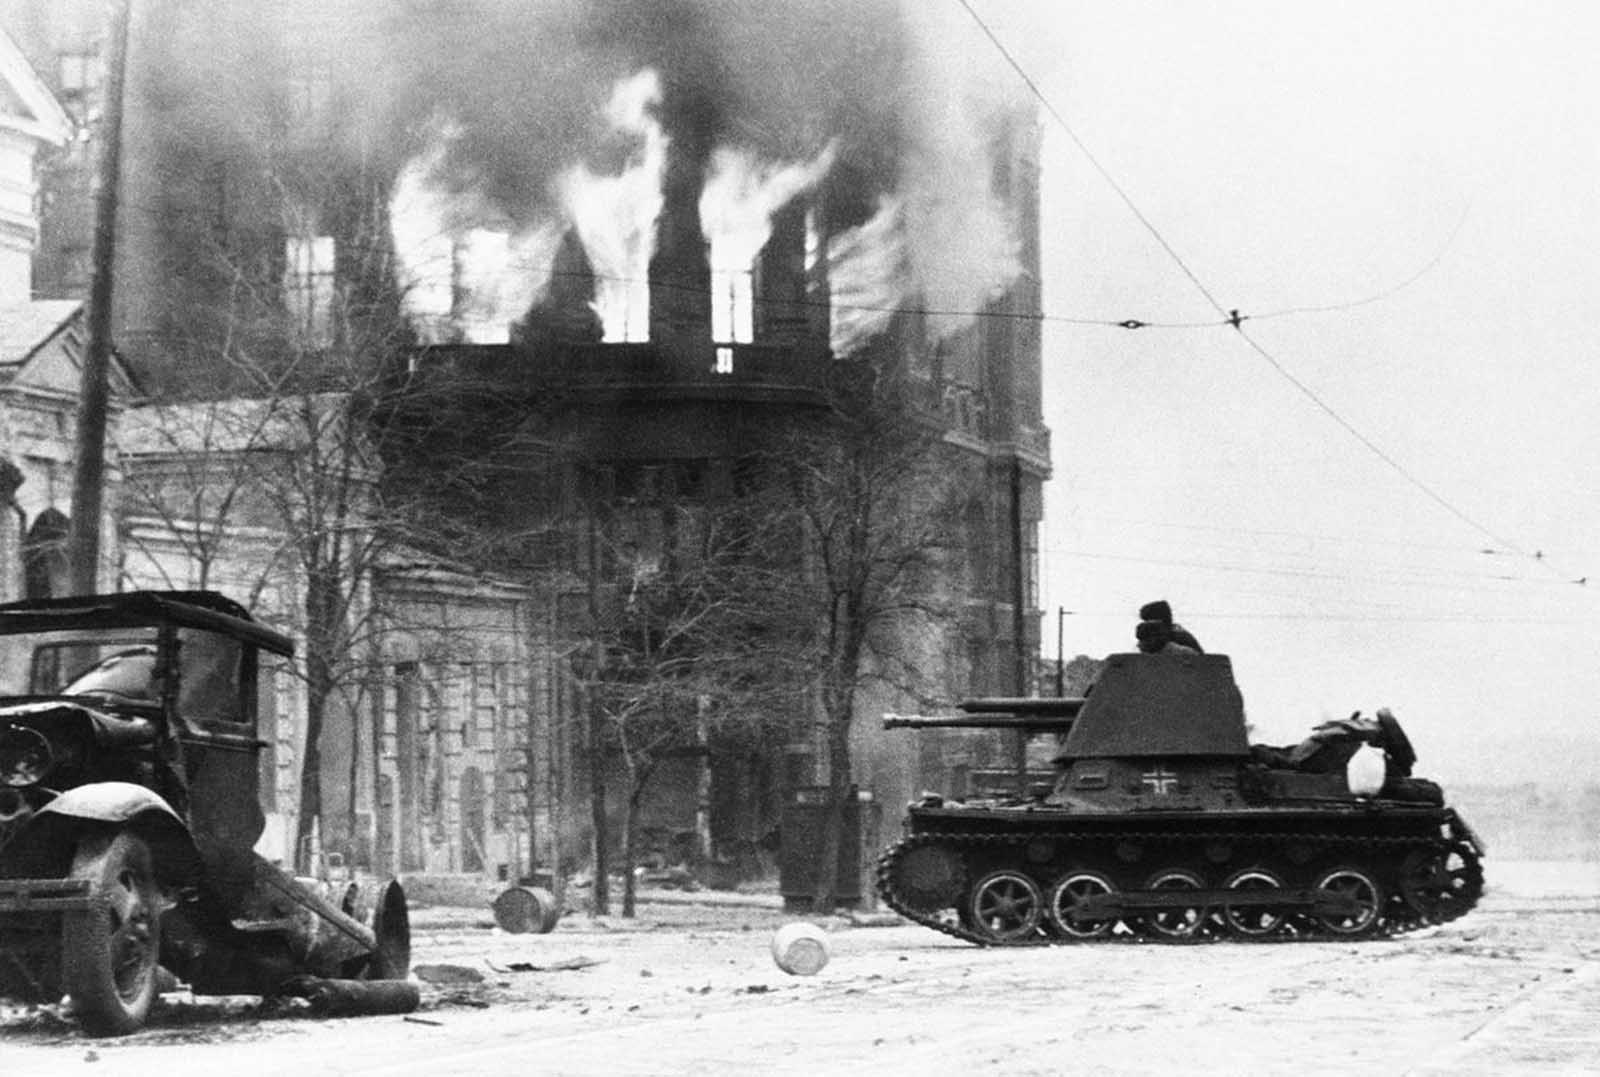 إحدى الدبابات الألمانية قرب روستوف